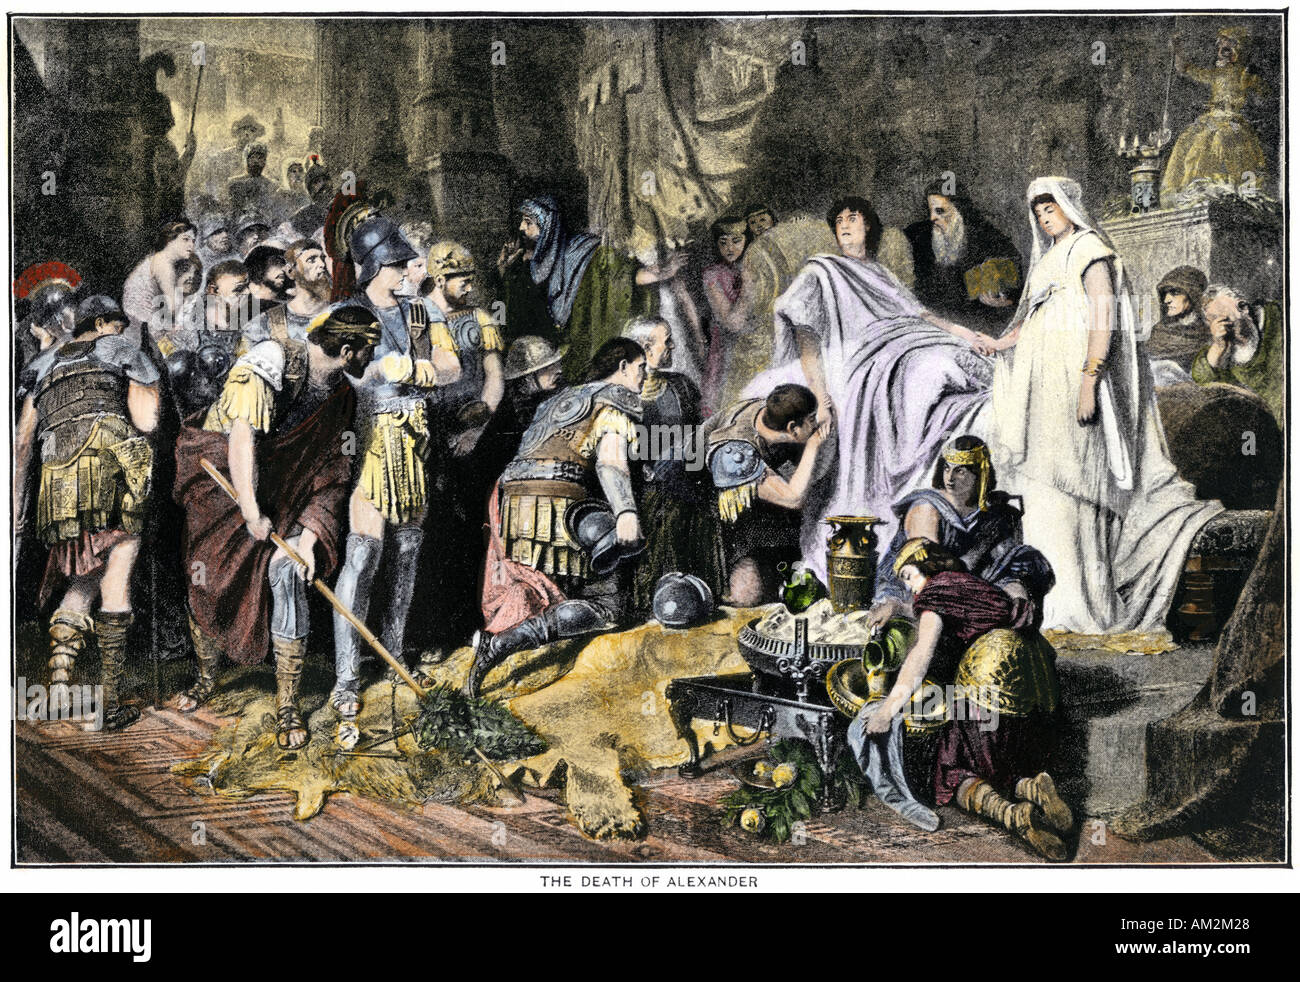 Soldaten zahlen abschließende Tribut an den sterbenden Alexander der Große 323 v. Chr. in Babylon. Handcolorierte halftone einer Abbildung Stockfoto